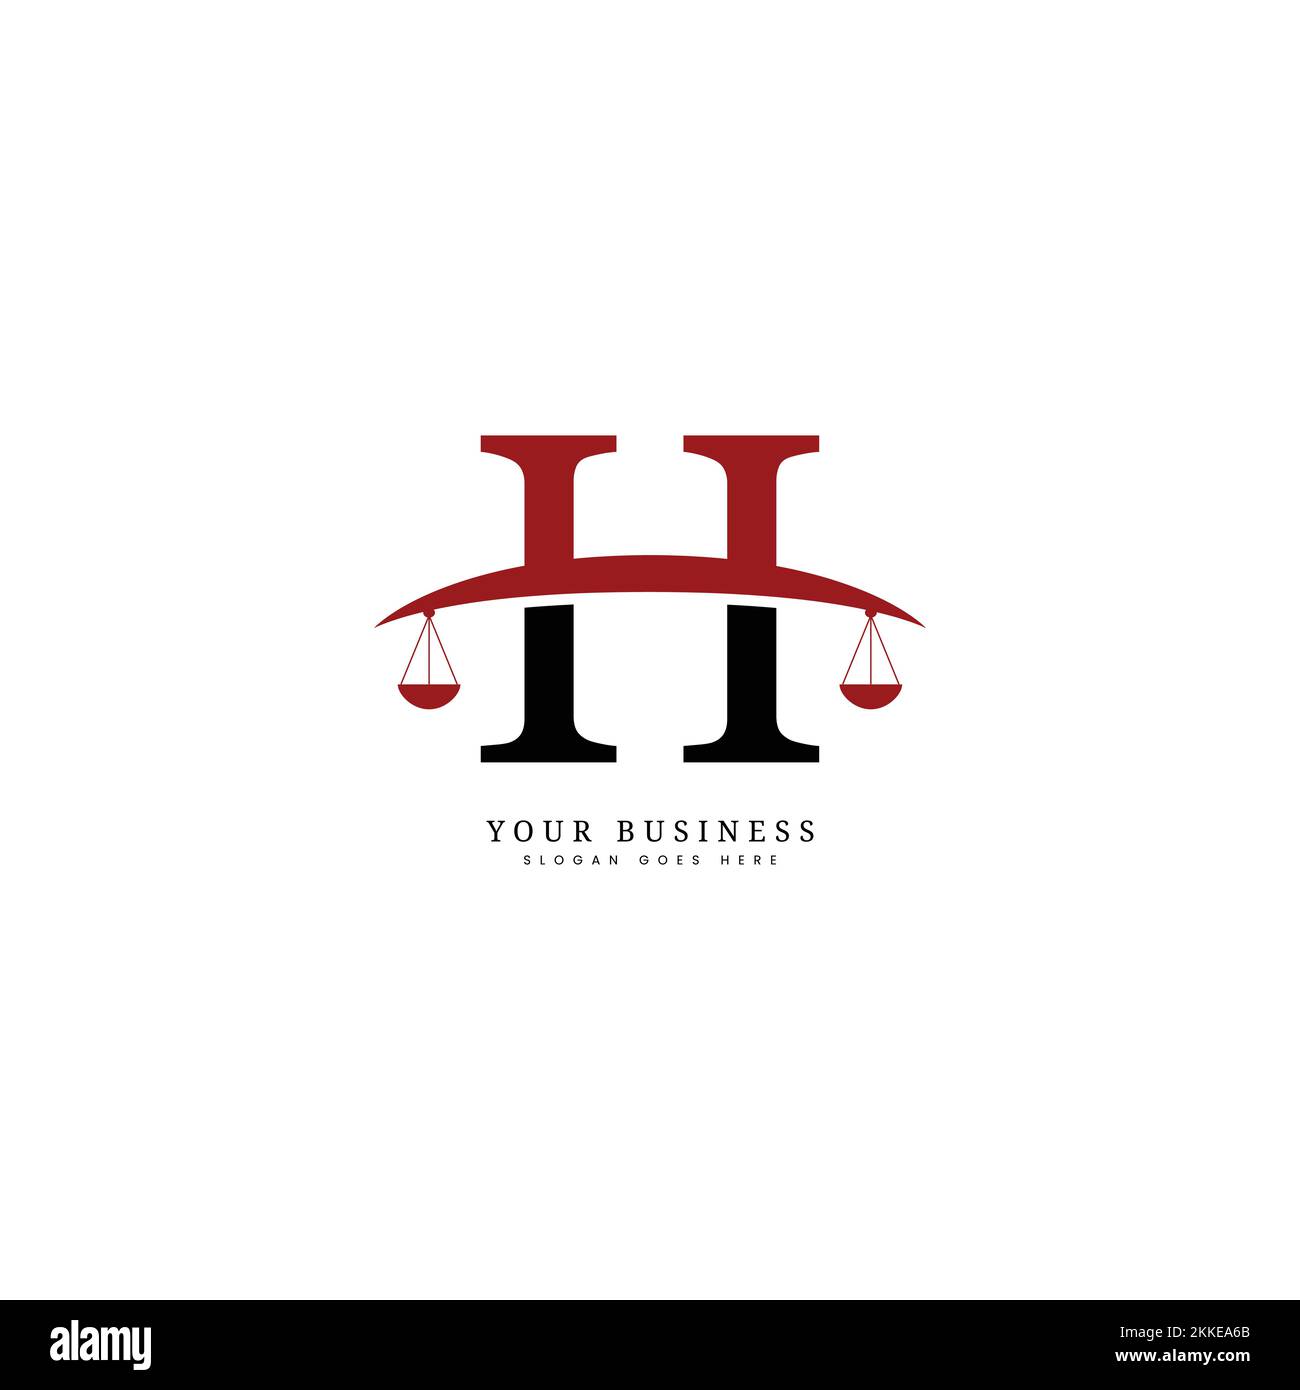 Lettre H logo commercial légal, logo du cabinet d'avocats et logo du procureur avec modèle d'image vectorielle H Illustration de Vecteur